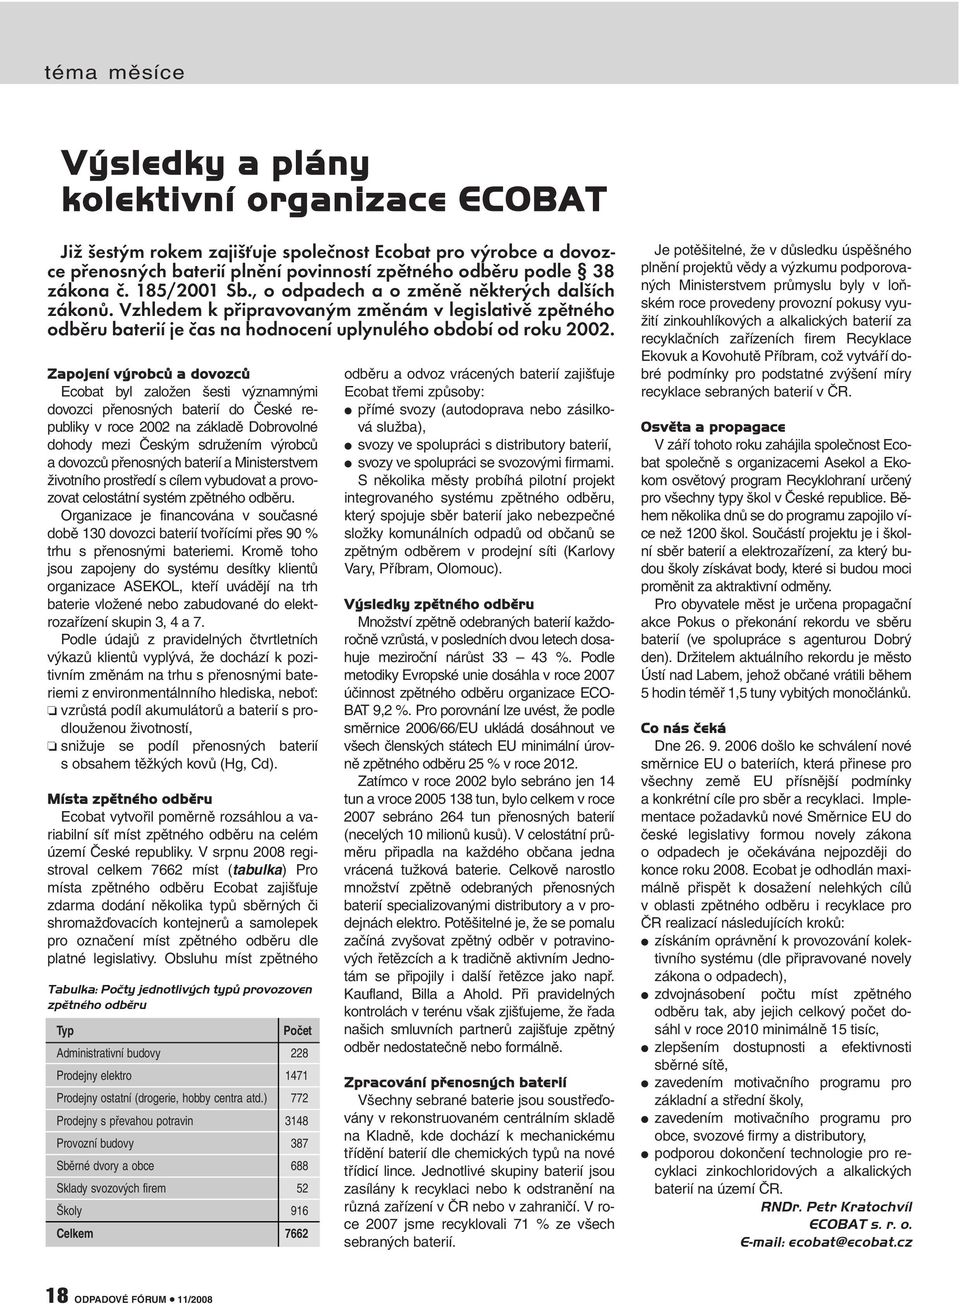 Zapojení výrobců a dovozců Ecobat byl založen šesti významnými dovozci přenosných baterií do České republiky v roce 2002 na základě Dobrovolné dohody mezi Českým sdružením výrobců a dovozců